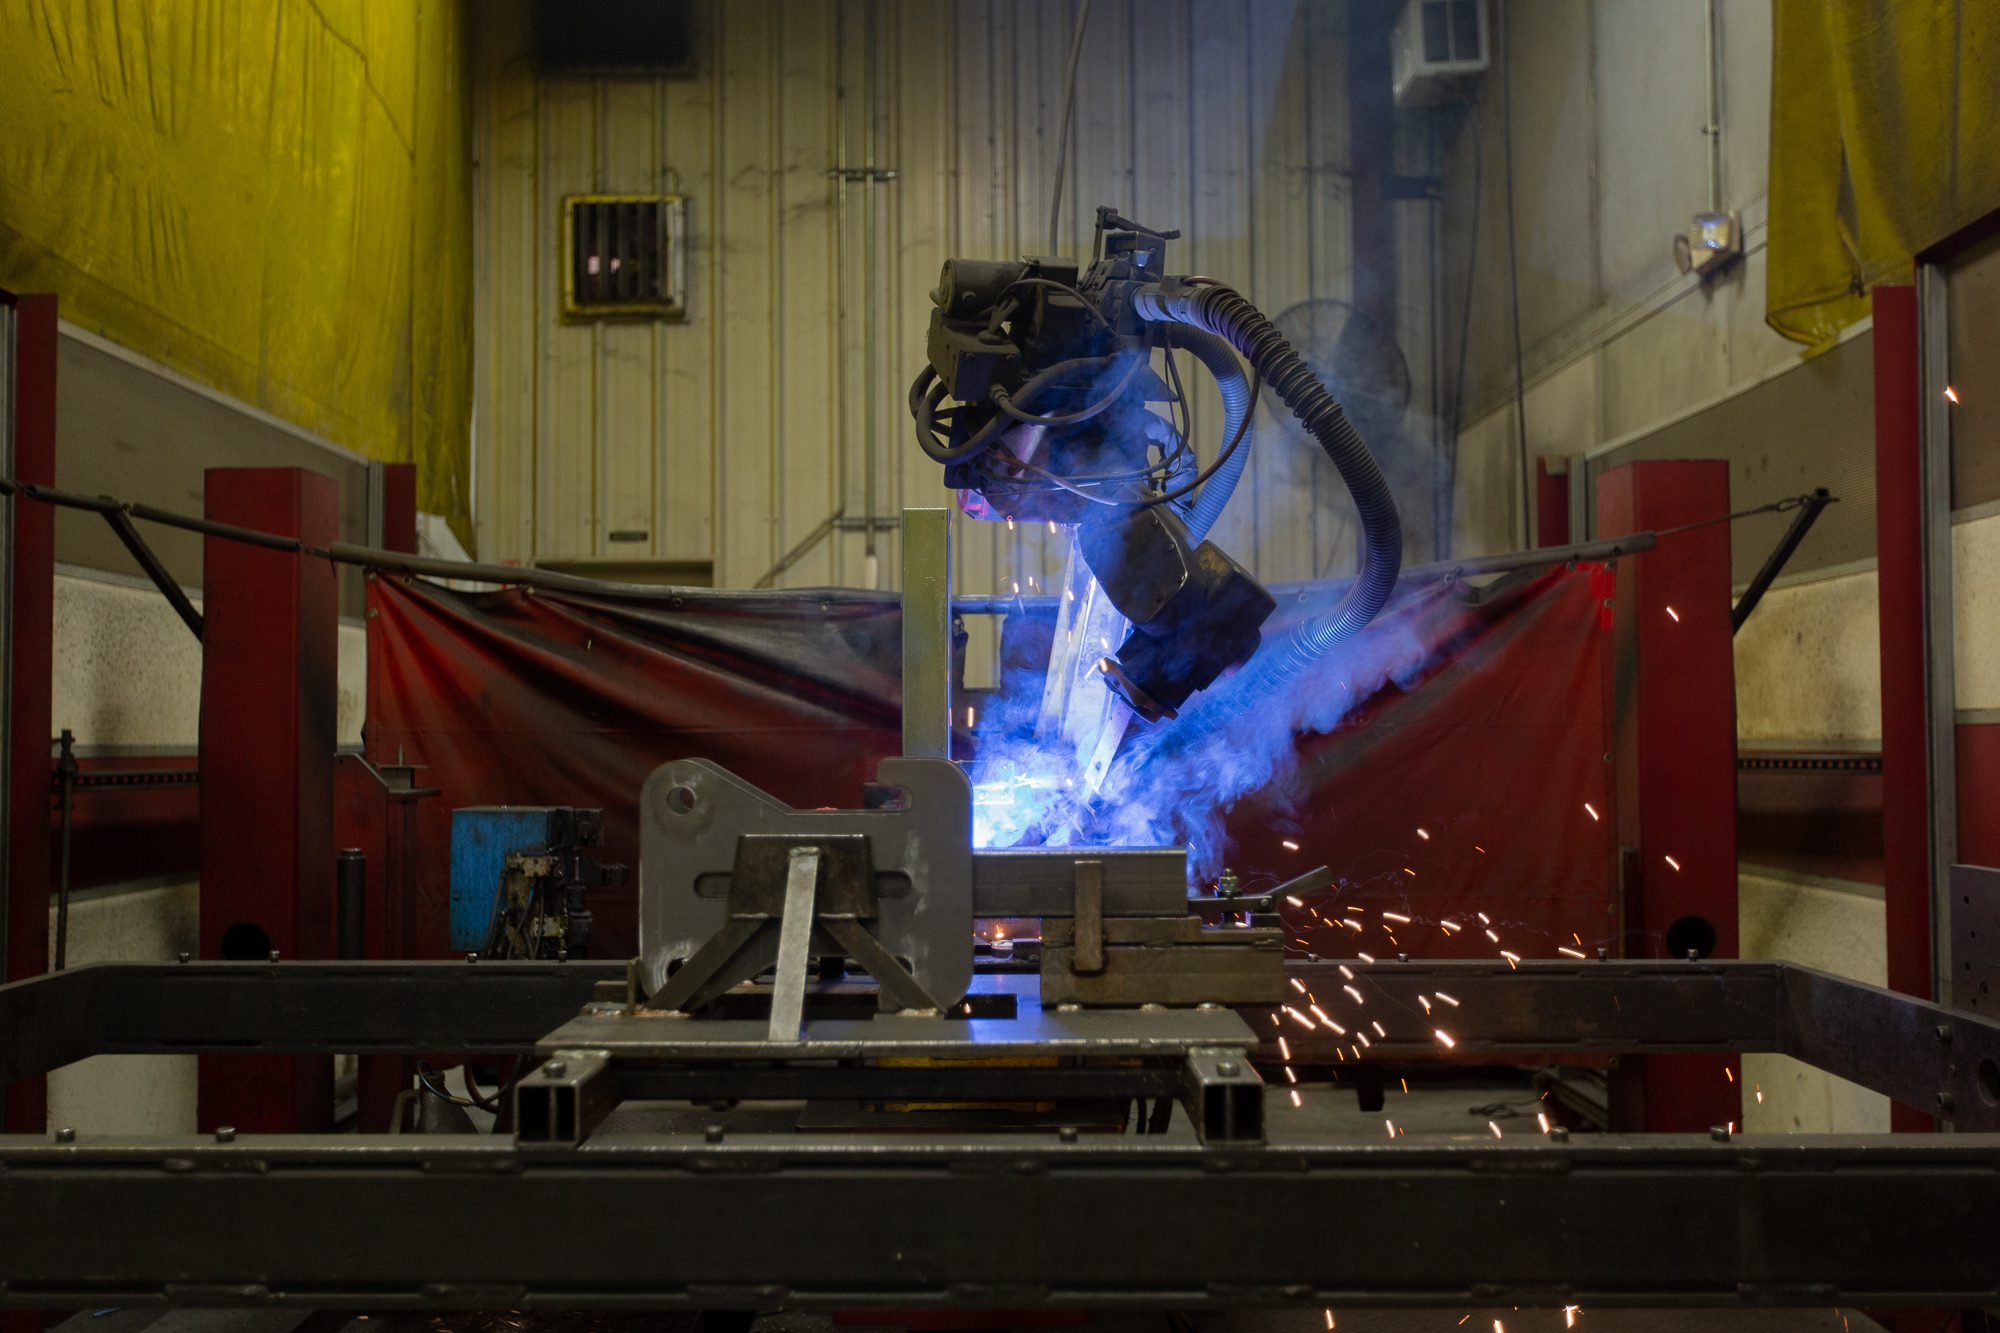 Robotic welding in action at Metaltech.